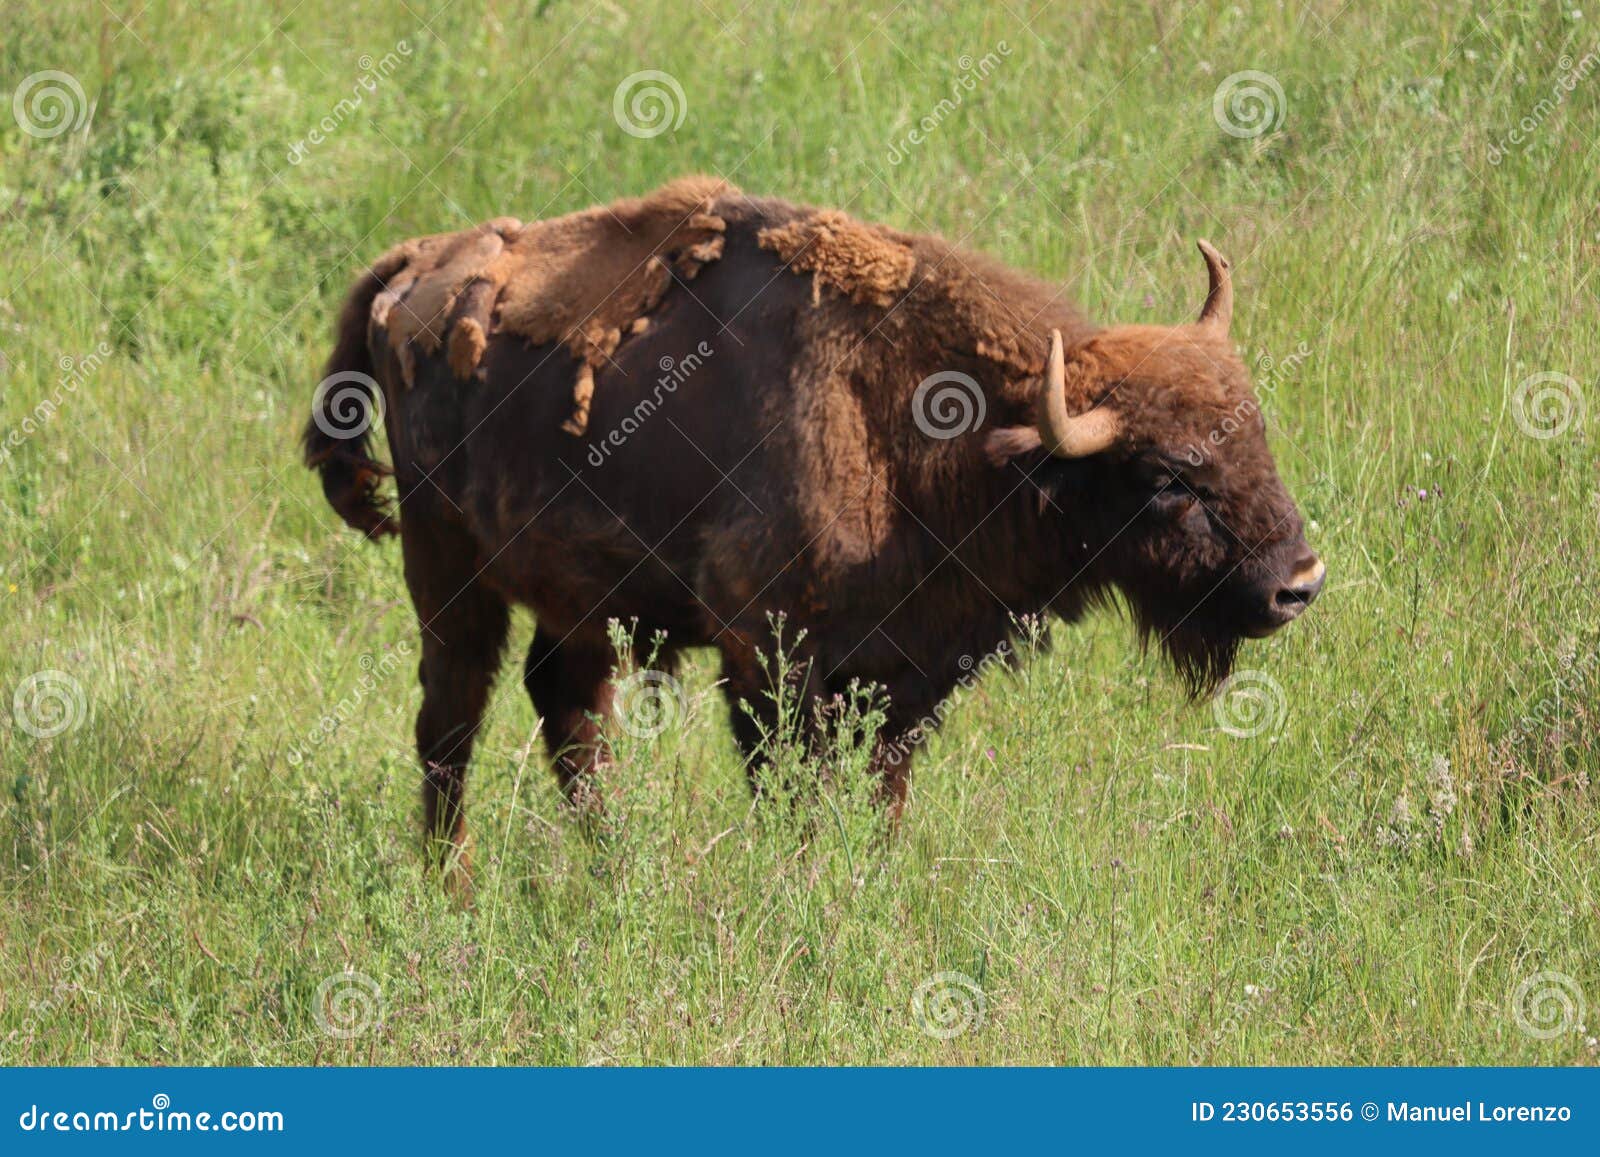 beautiful big bison dangerous horns herbivorous zoo safari animal